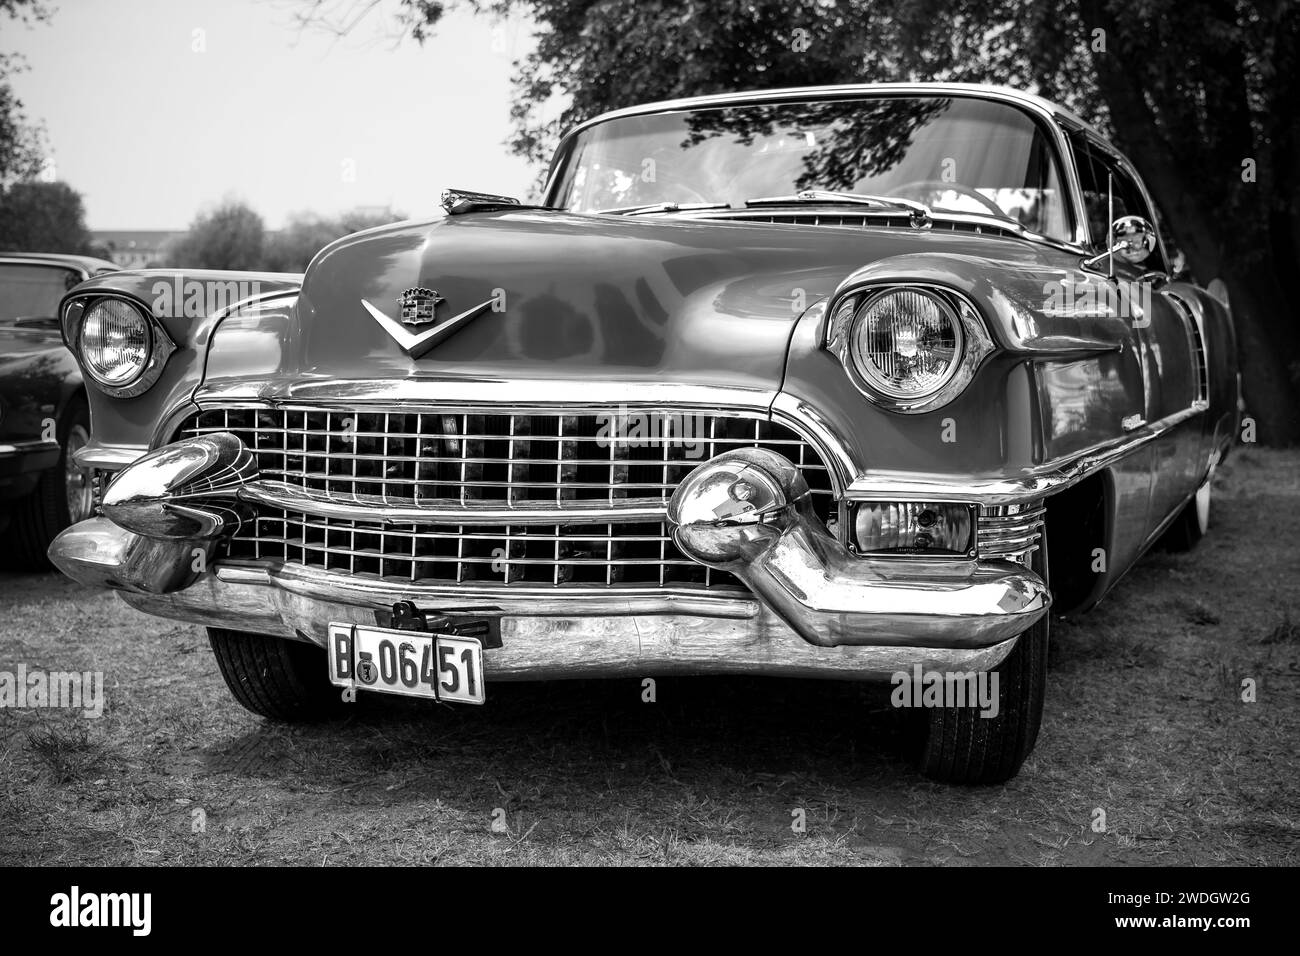 WERDER (HAVEL), DEUTSCHLAND - 20. MAI 2023: Der Luxuswagen Cadillac Serie 62 Coupe de Ville, 1951. Oldtimer - Festival Werder Classics 2023 Stockfoto